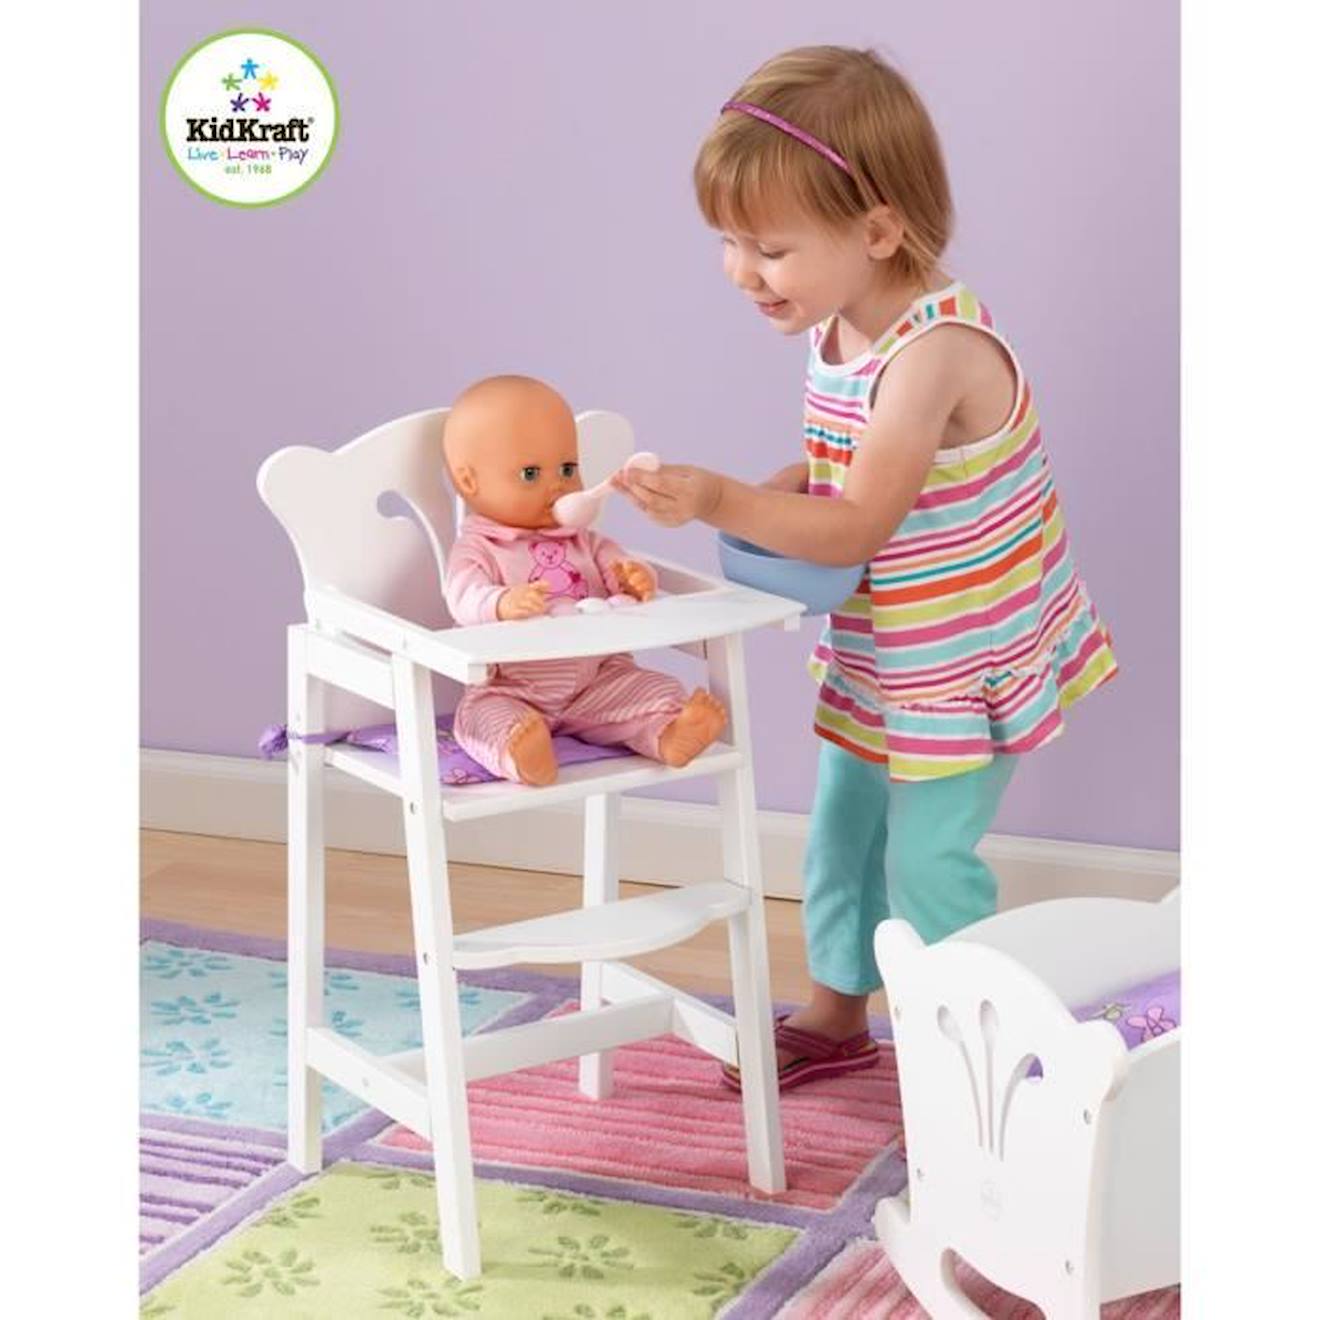 Kidkraft - Chaise Pour Poupée En Bois Lil' Doll, Accessoire Pour Poupées Blanc